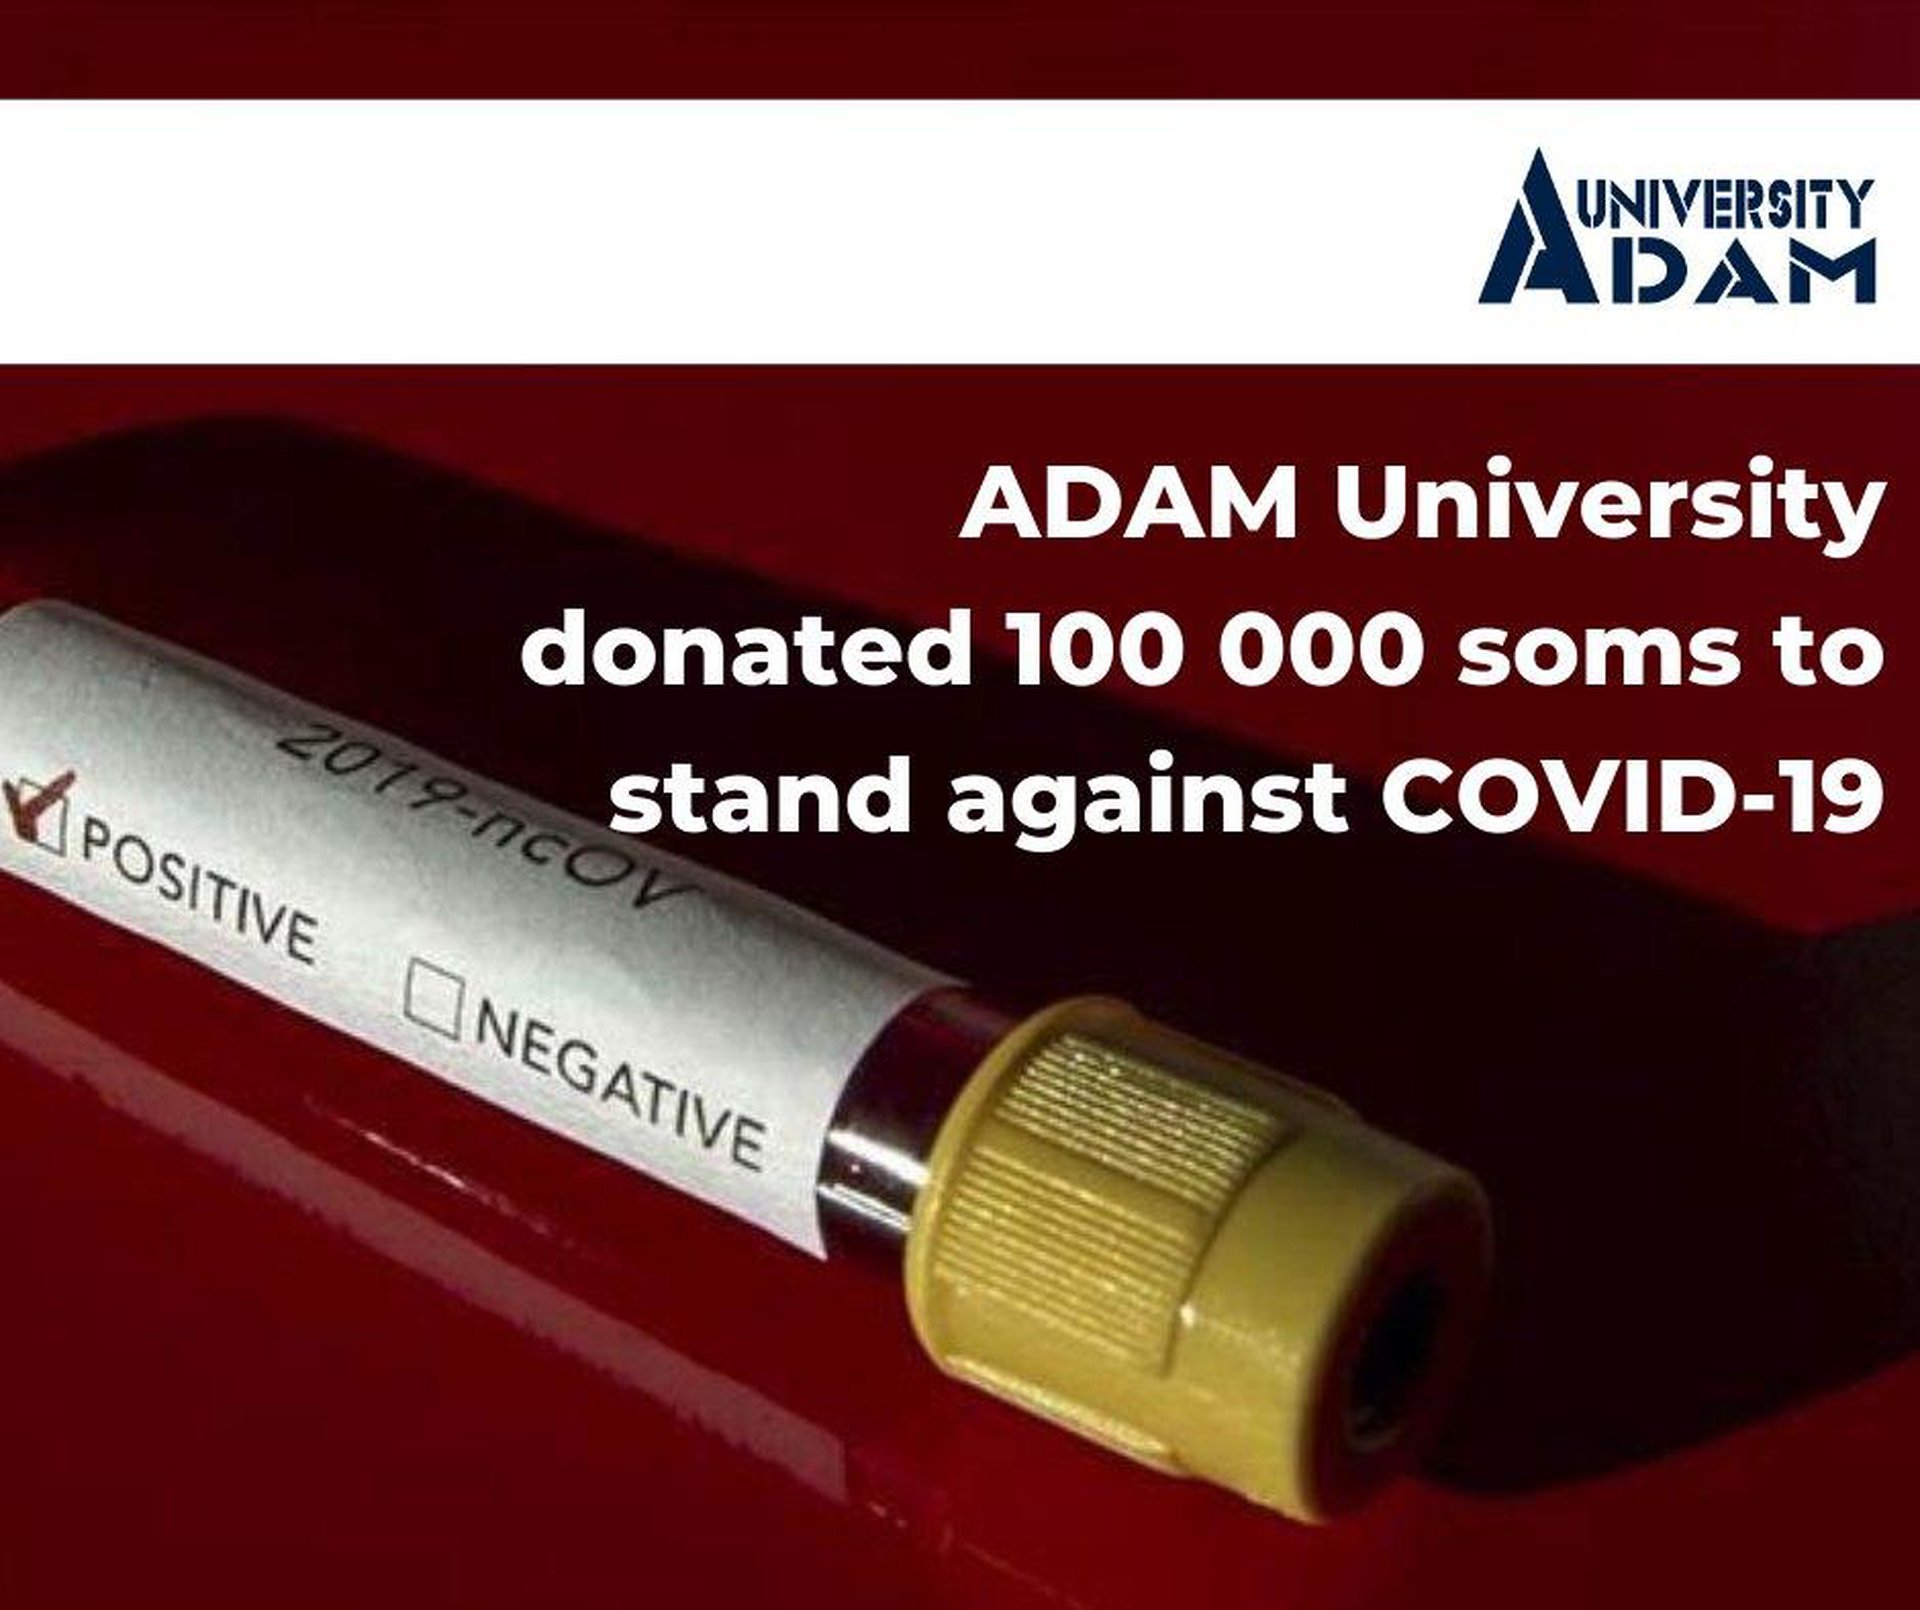 Университет Адам пожертвовал 100 000 сомов на борьбу с COVID-19 в Кыргызстане